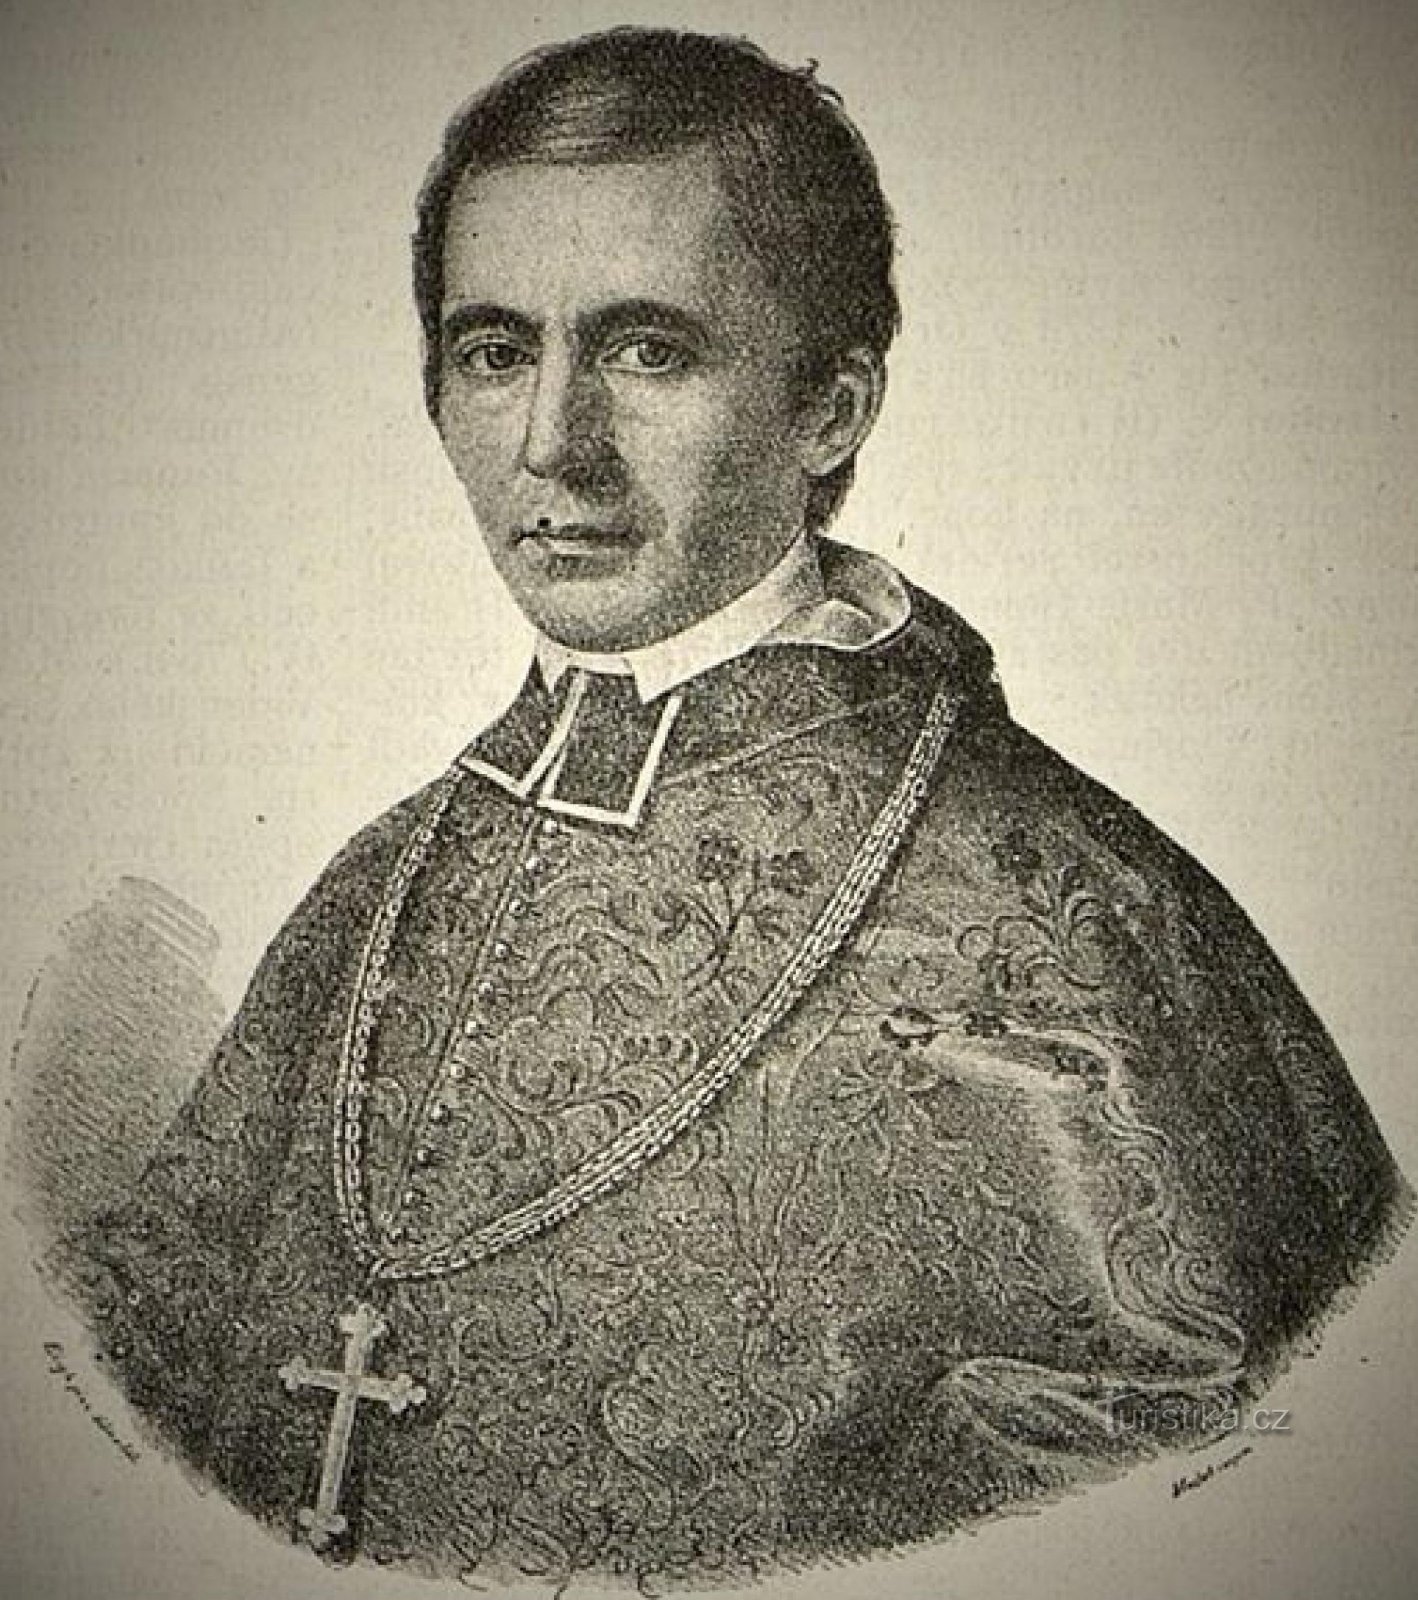 Hradec Králové biskop frk. Ph.Dr. Karel B. Hanl